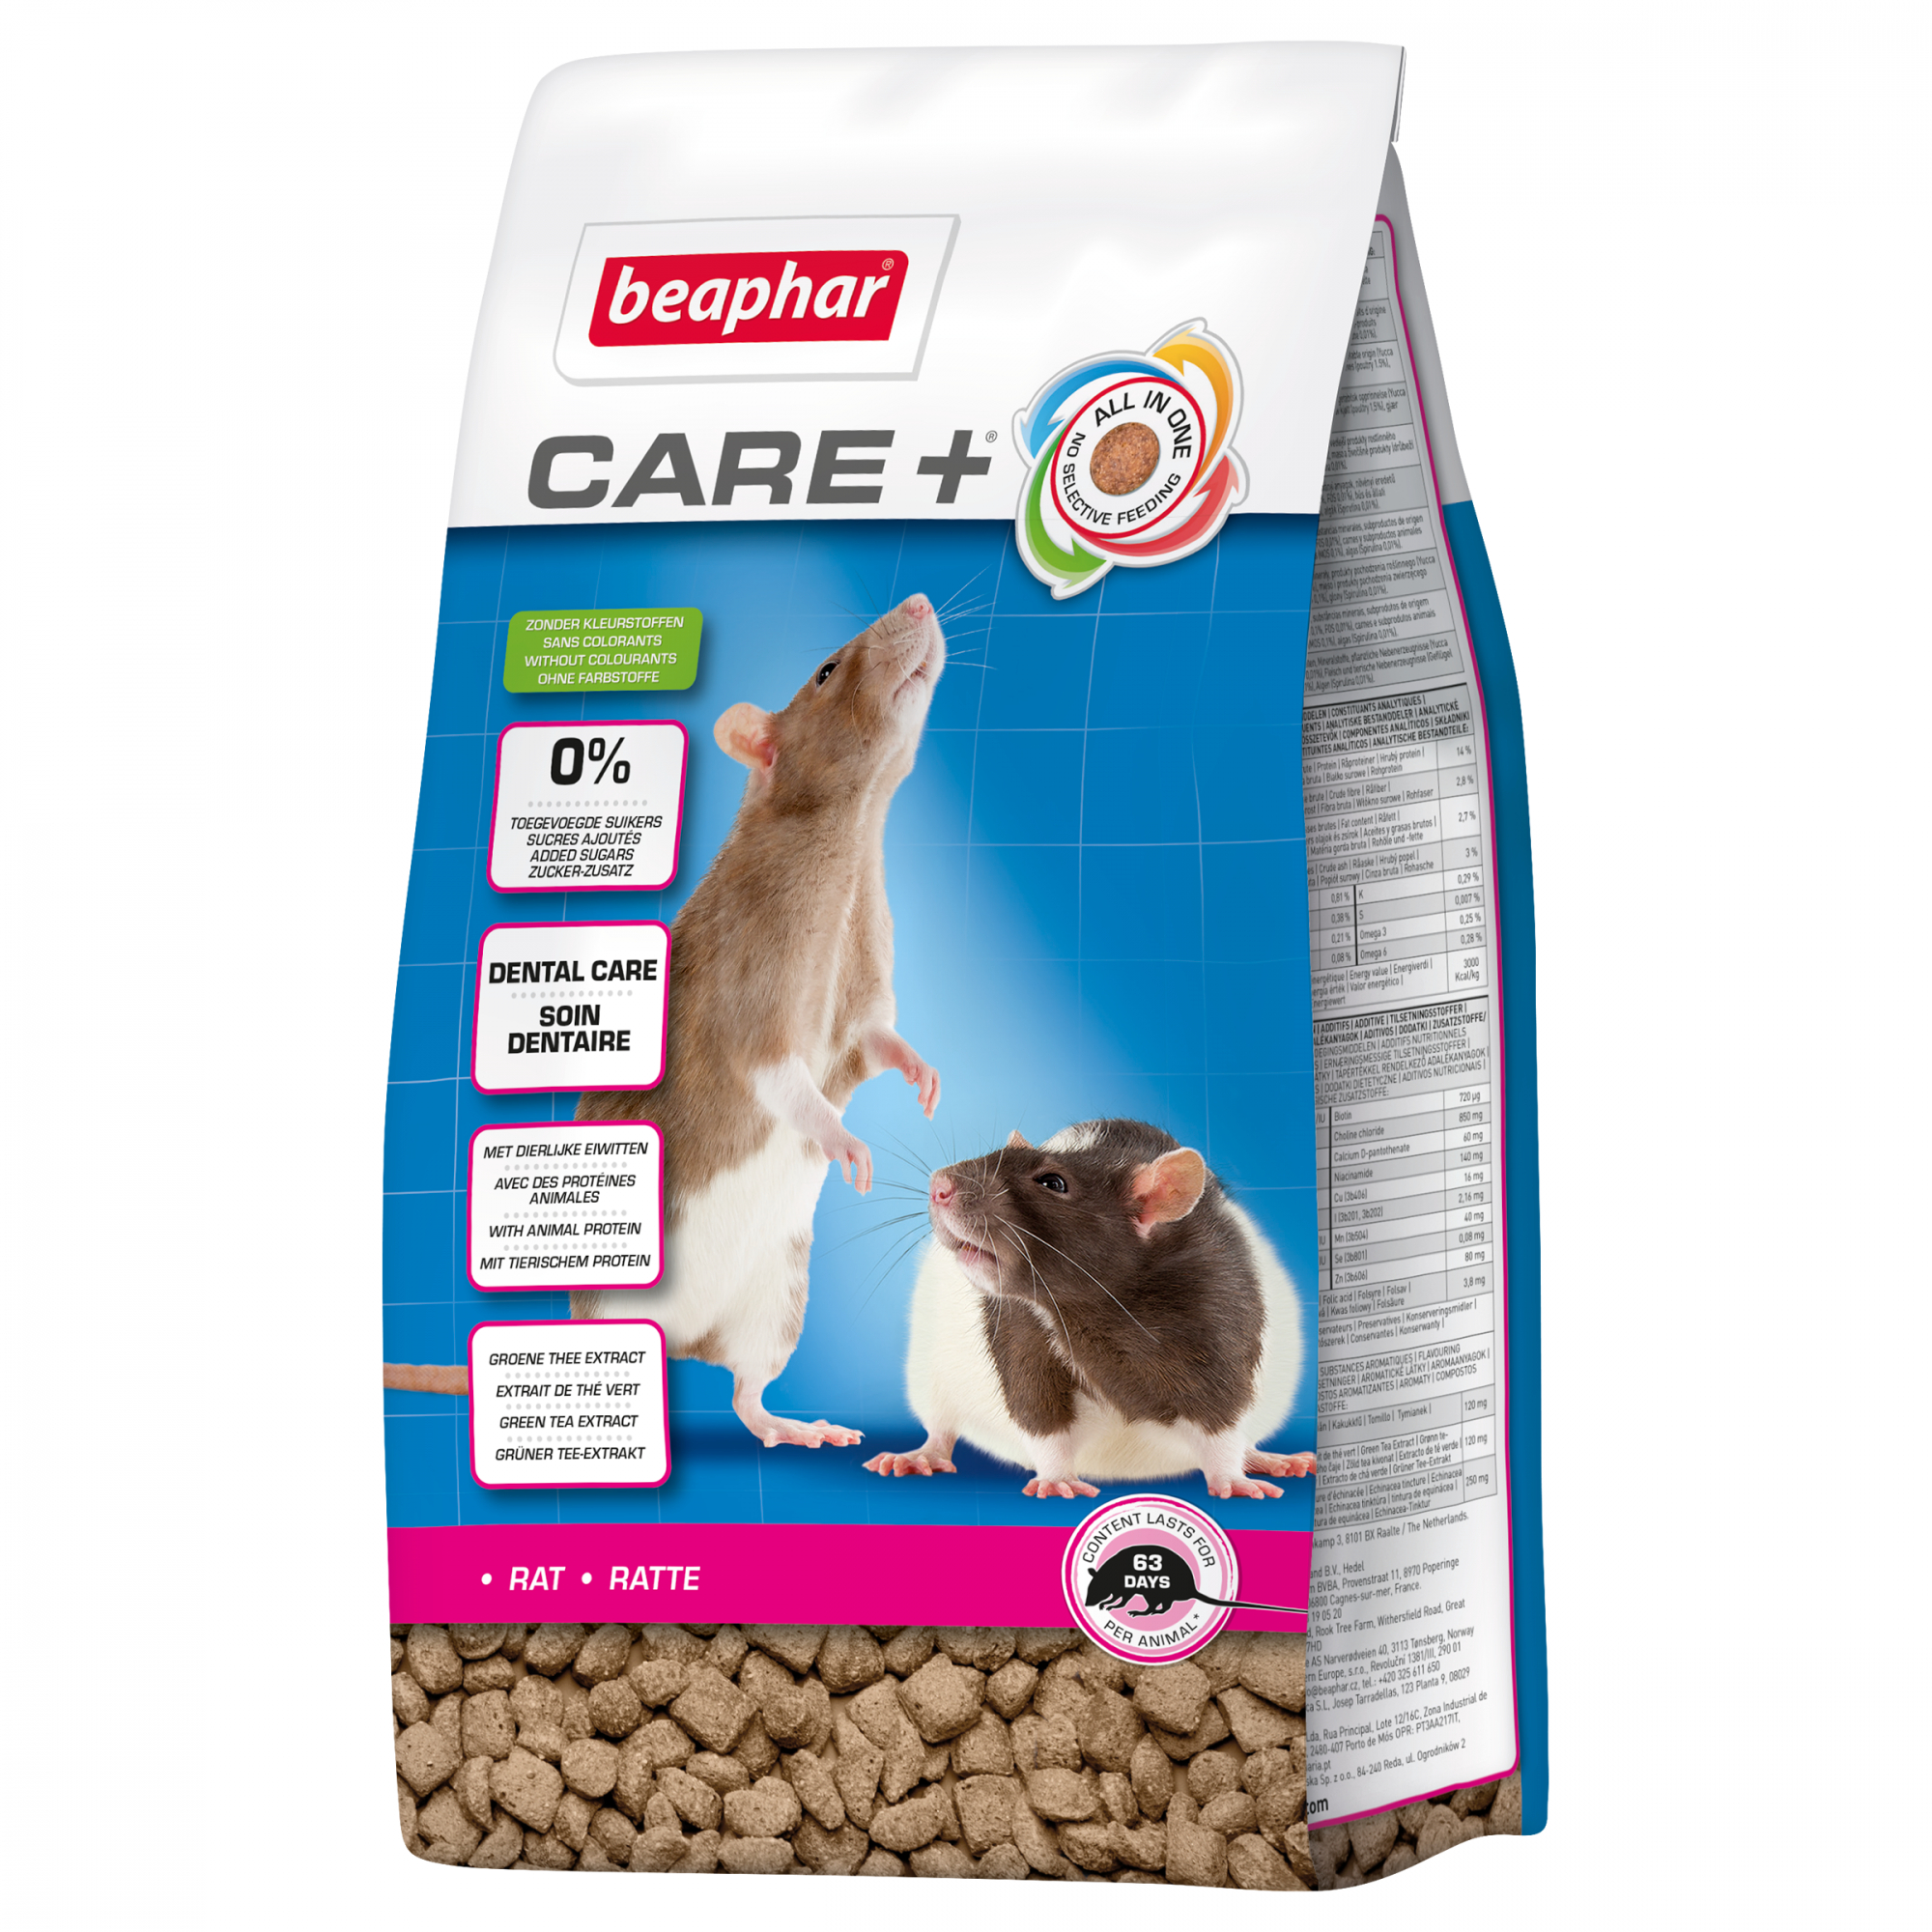 Care + Rato Alimento extrudido